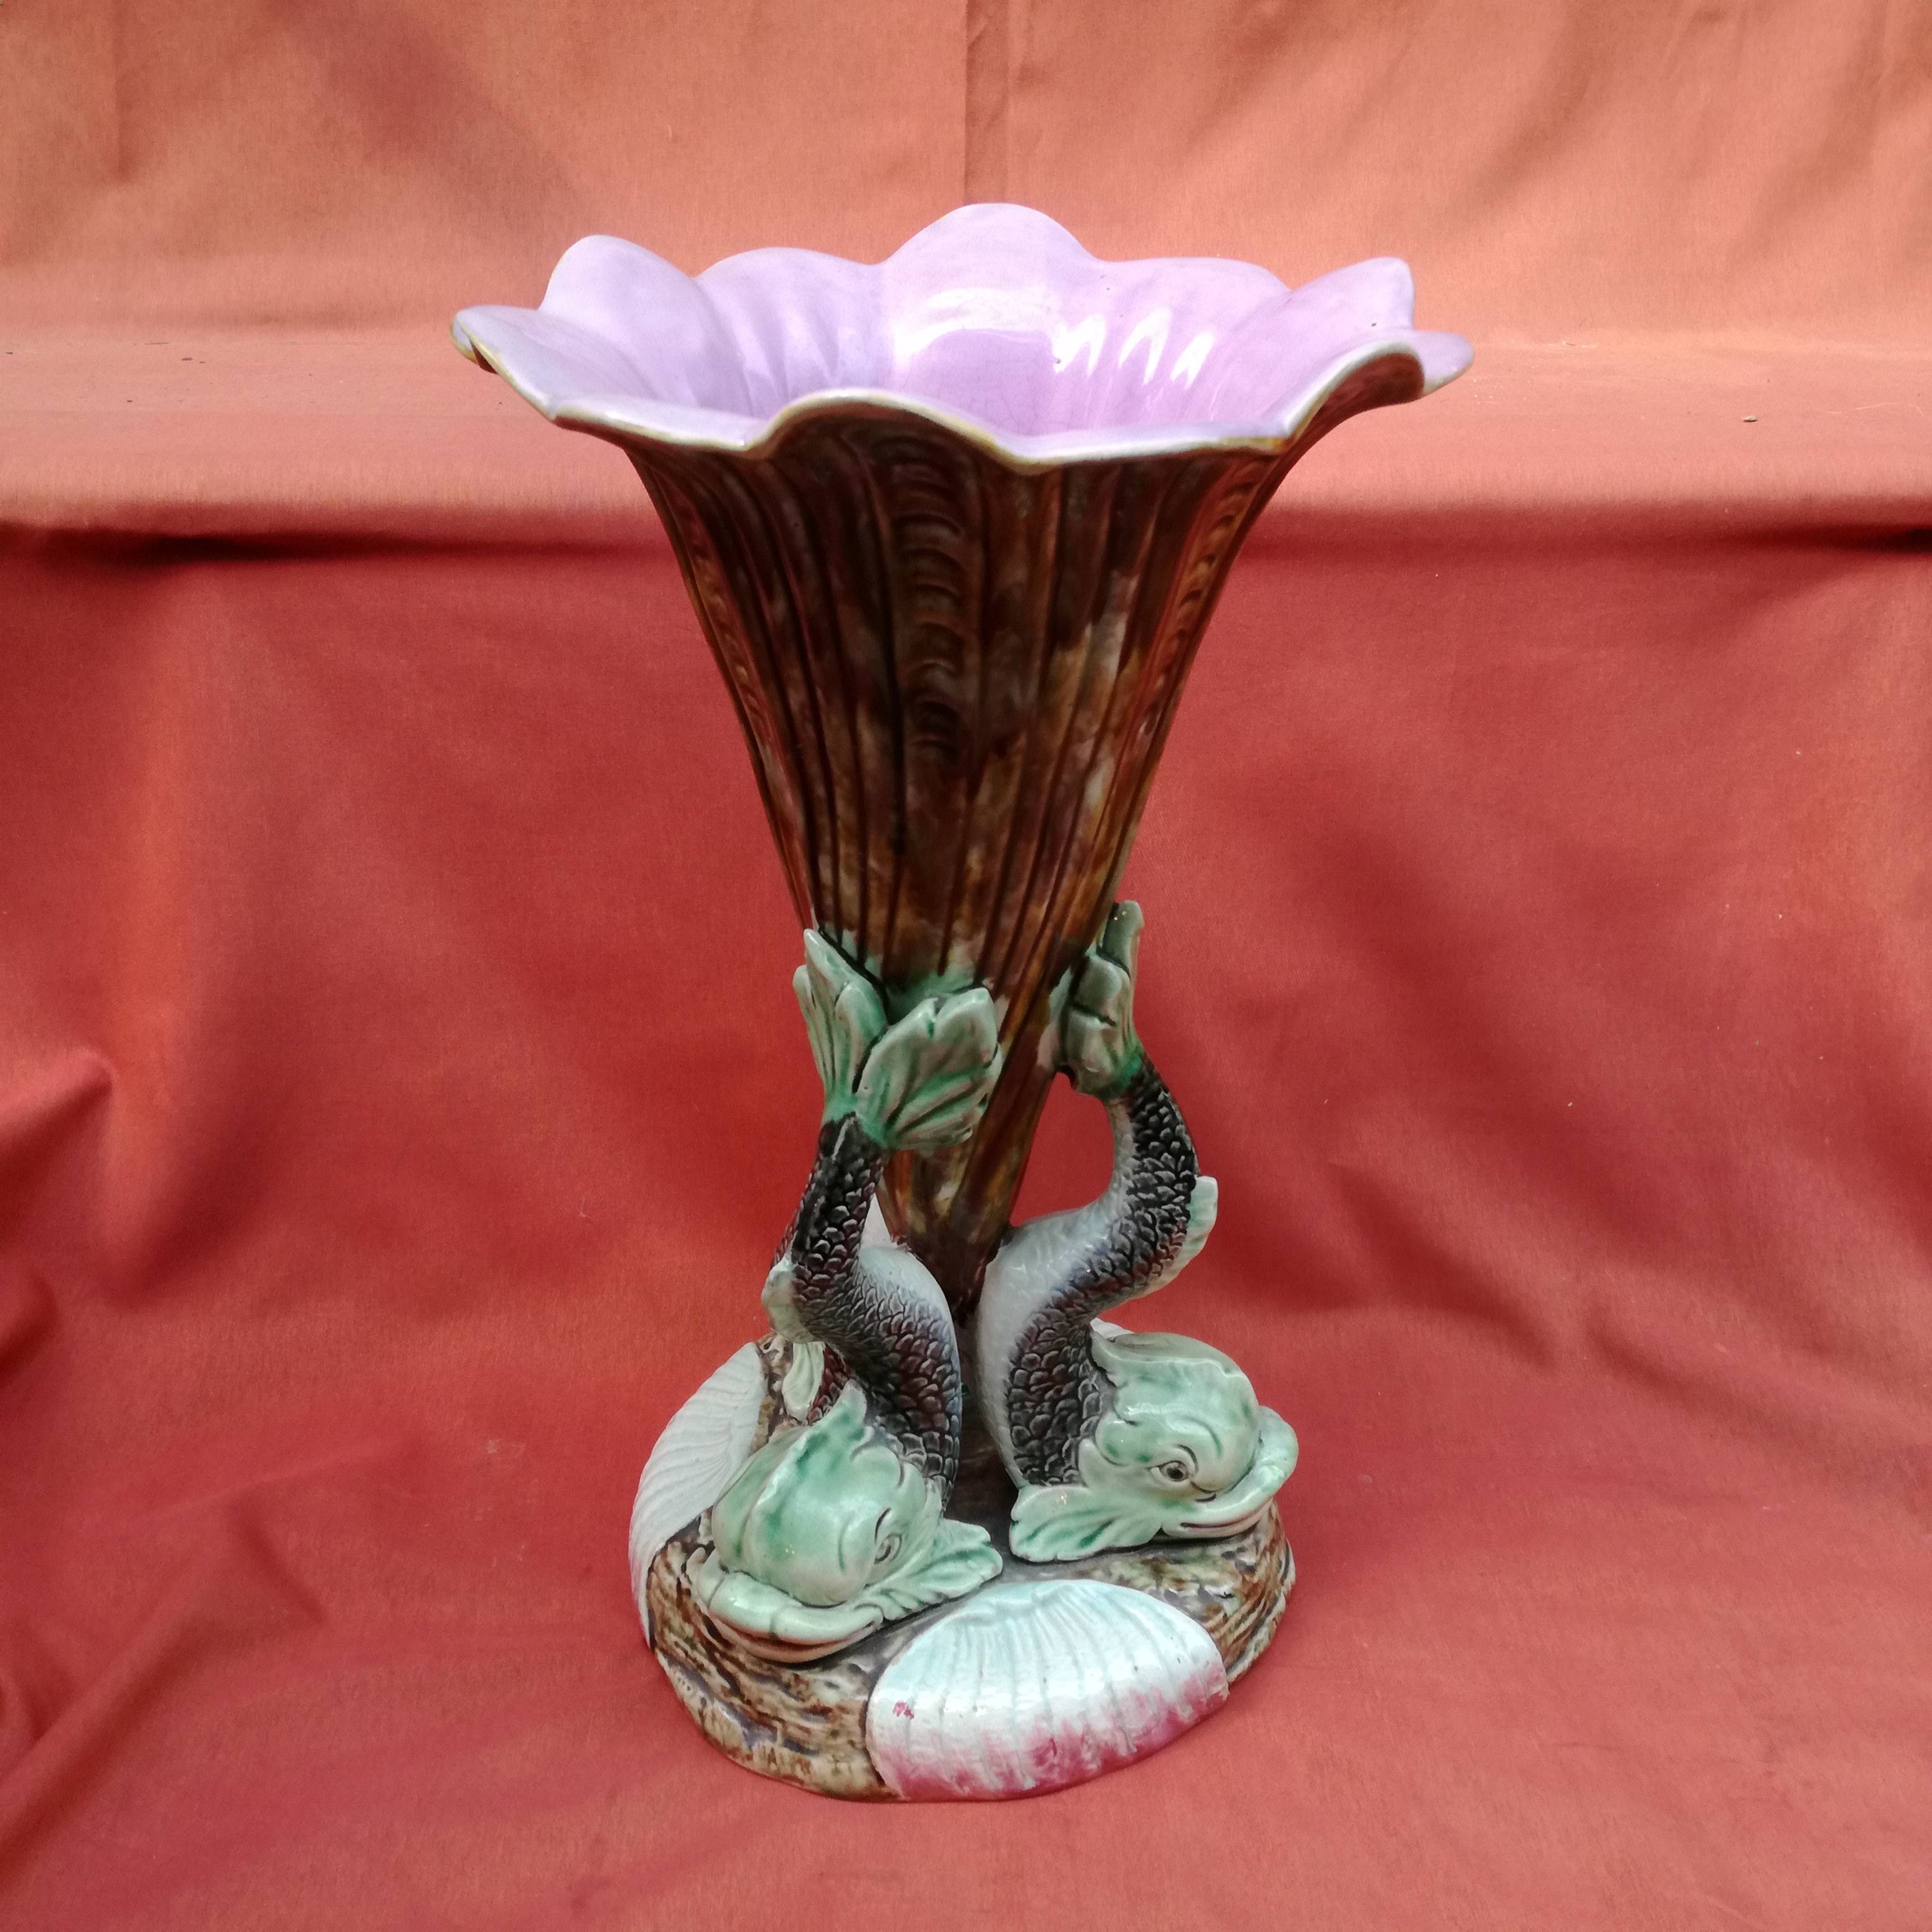 Grand vase en barbotine vers 1900 forme de corolle de fleur soutenue par  trois dauphins - Début de Série